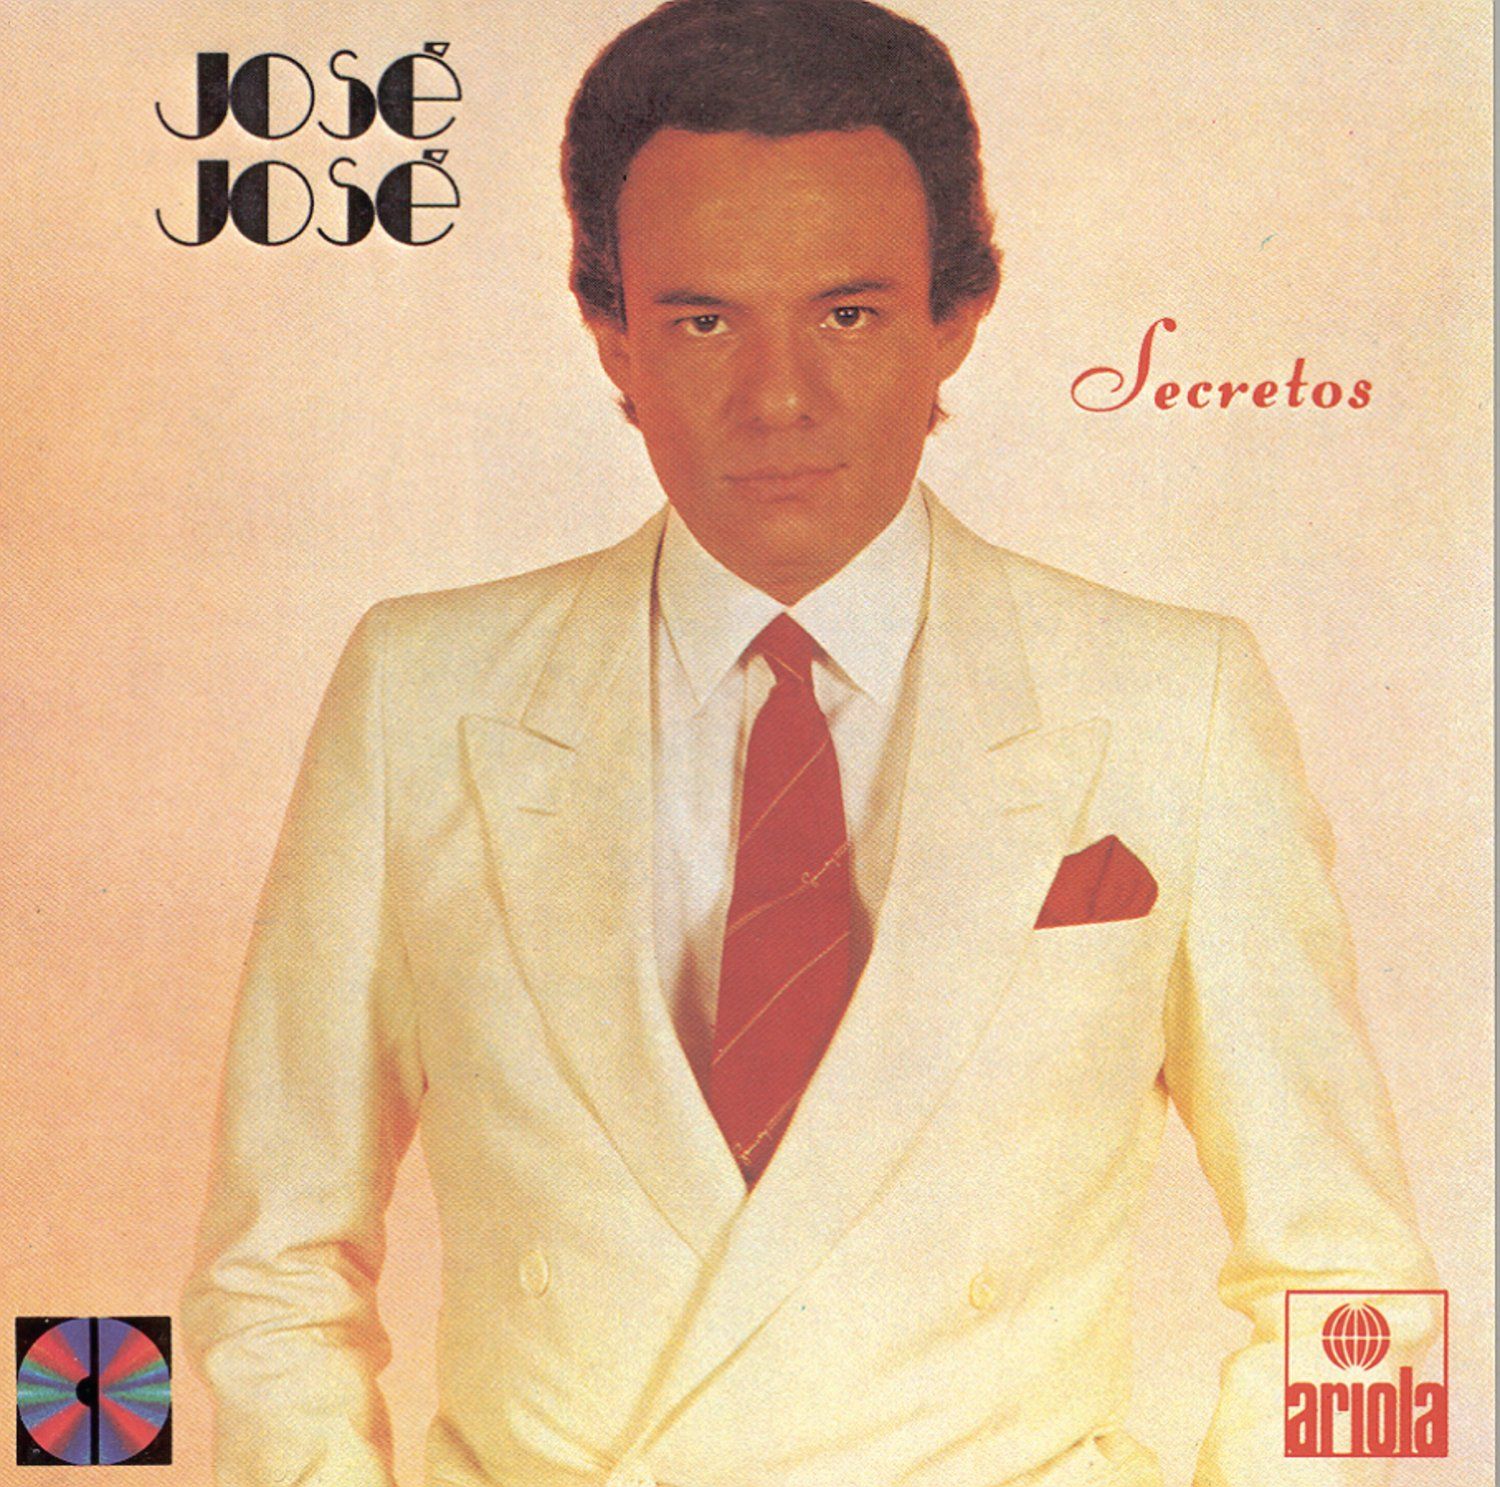 José José | 43 álbumes de la Discografía en CIFRA CLUB